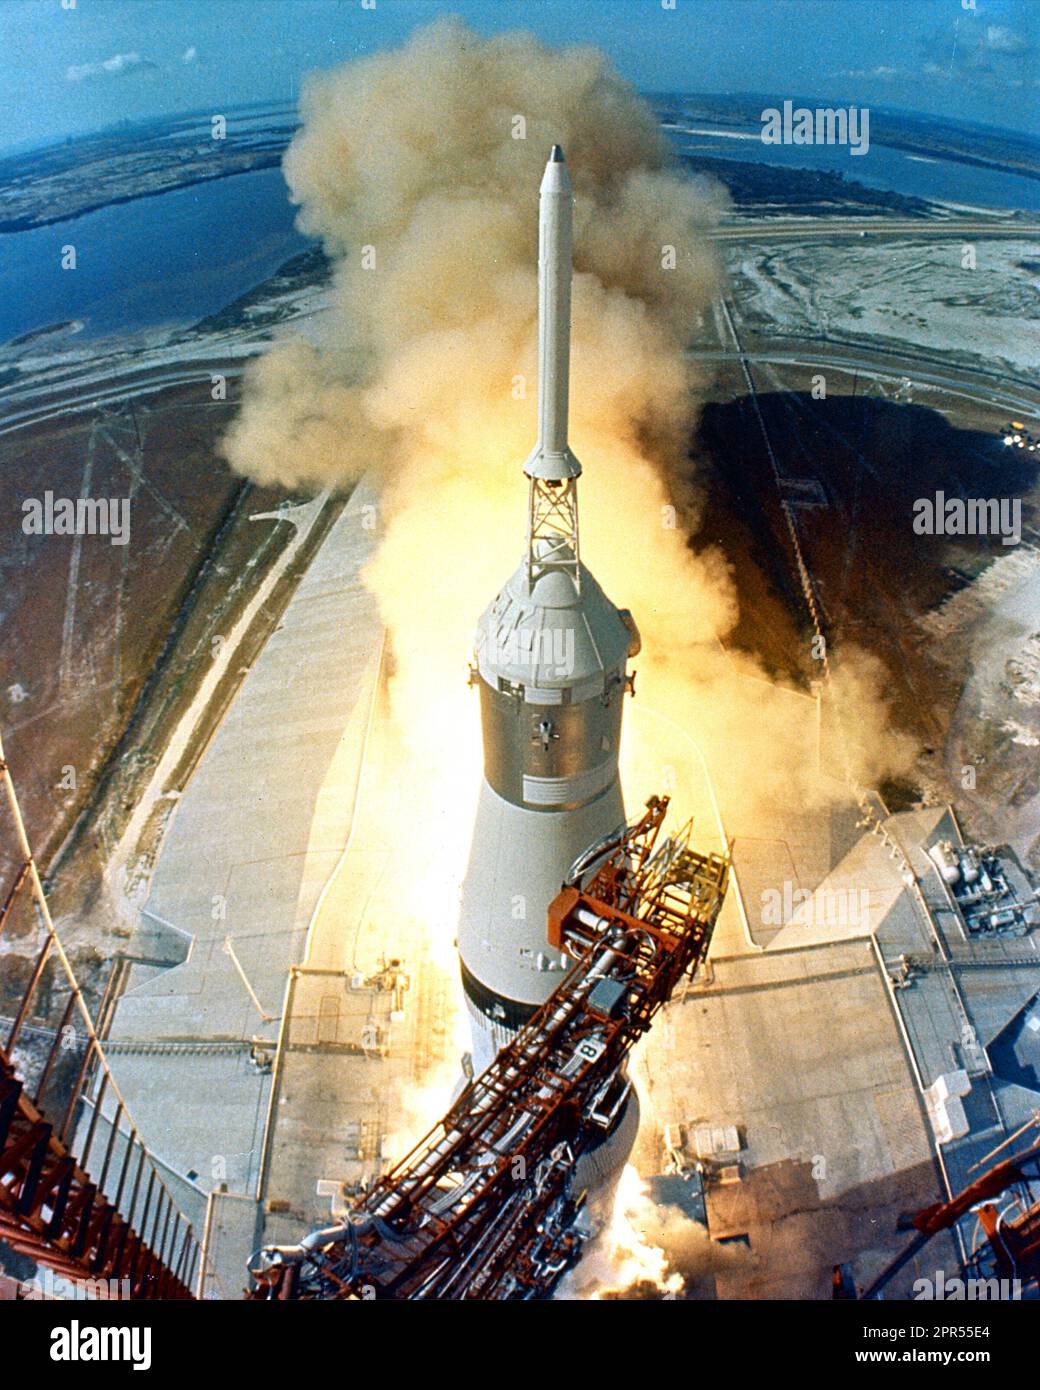 Um 9:32 Uhr EDT ziehen sich die Schwingenarme weg und eine Flamme signalisiert den Start des Raumfahrzeugs Apollo 11 Saturn V und der Astronauten Neil A. Armstrong, Michael Collins und Edwin E. Aldrin, Jr. vom Kennedy Space Center Launch Complex 39A. Stockfoto